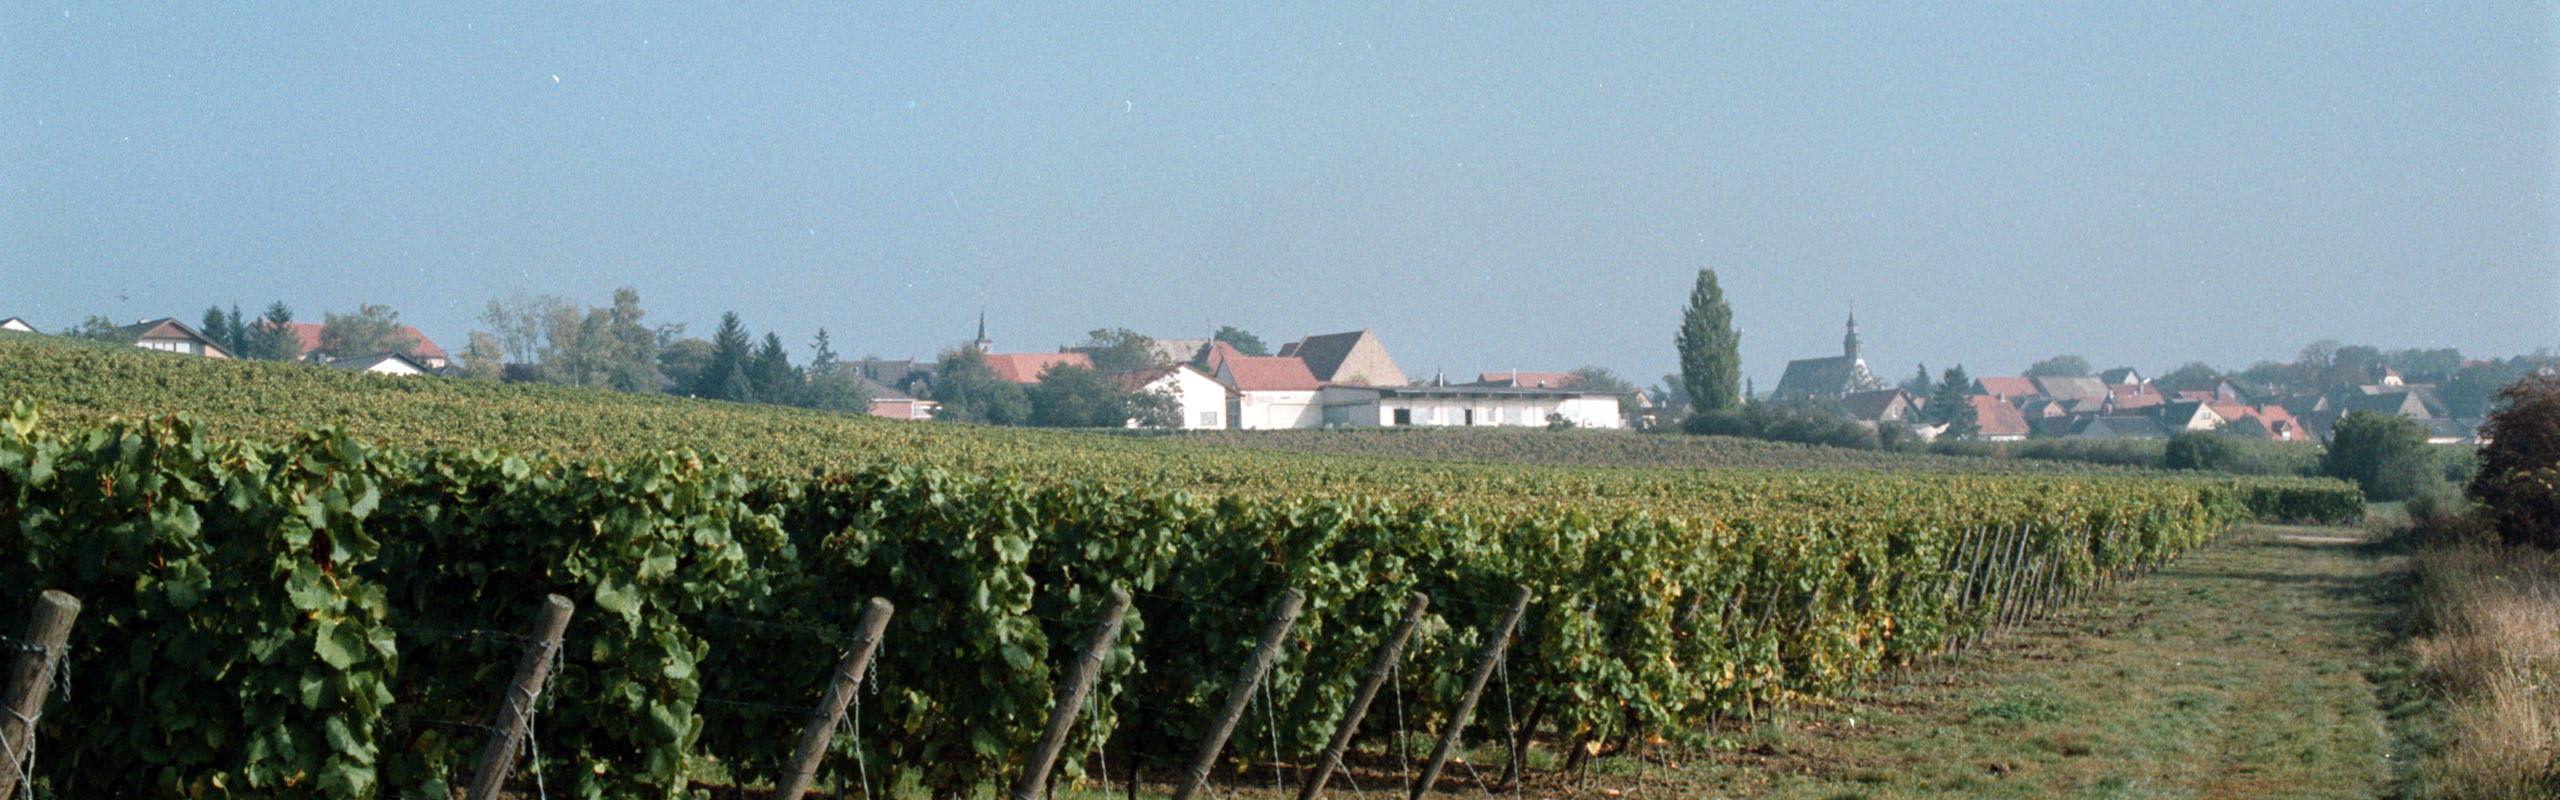 Weingut Petry & Frieß in Weinolsheim